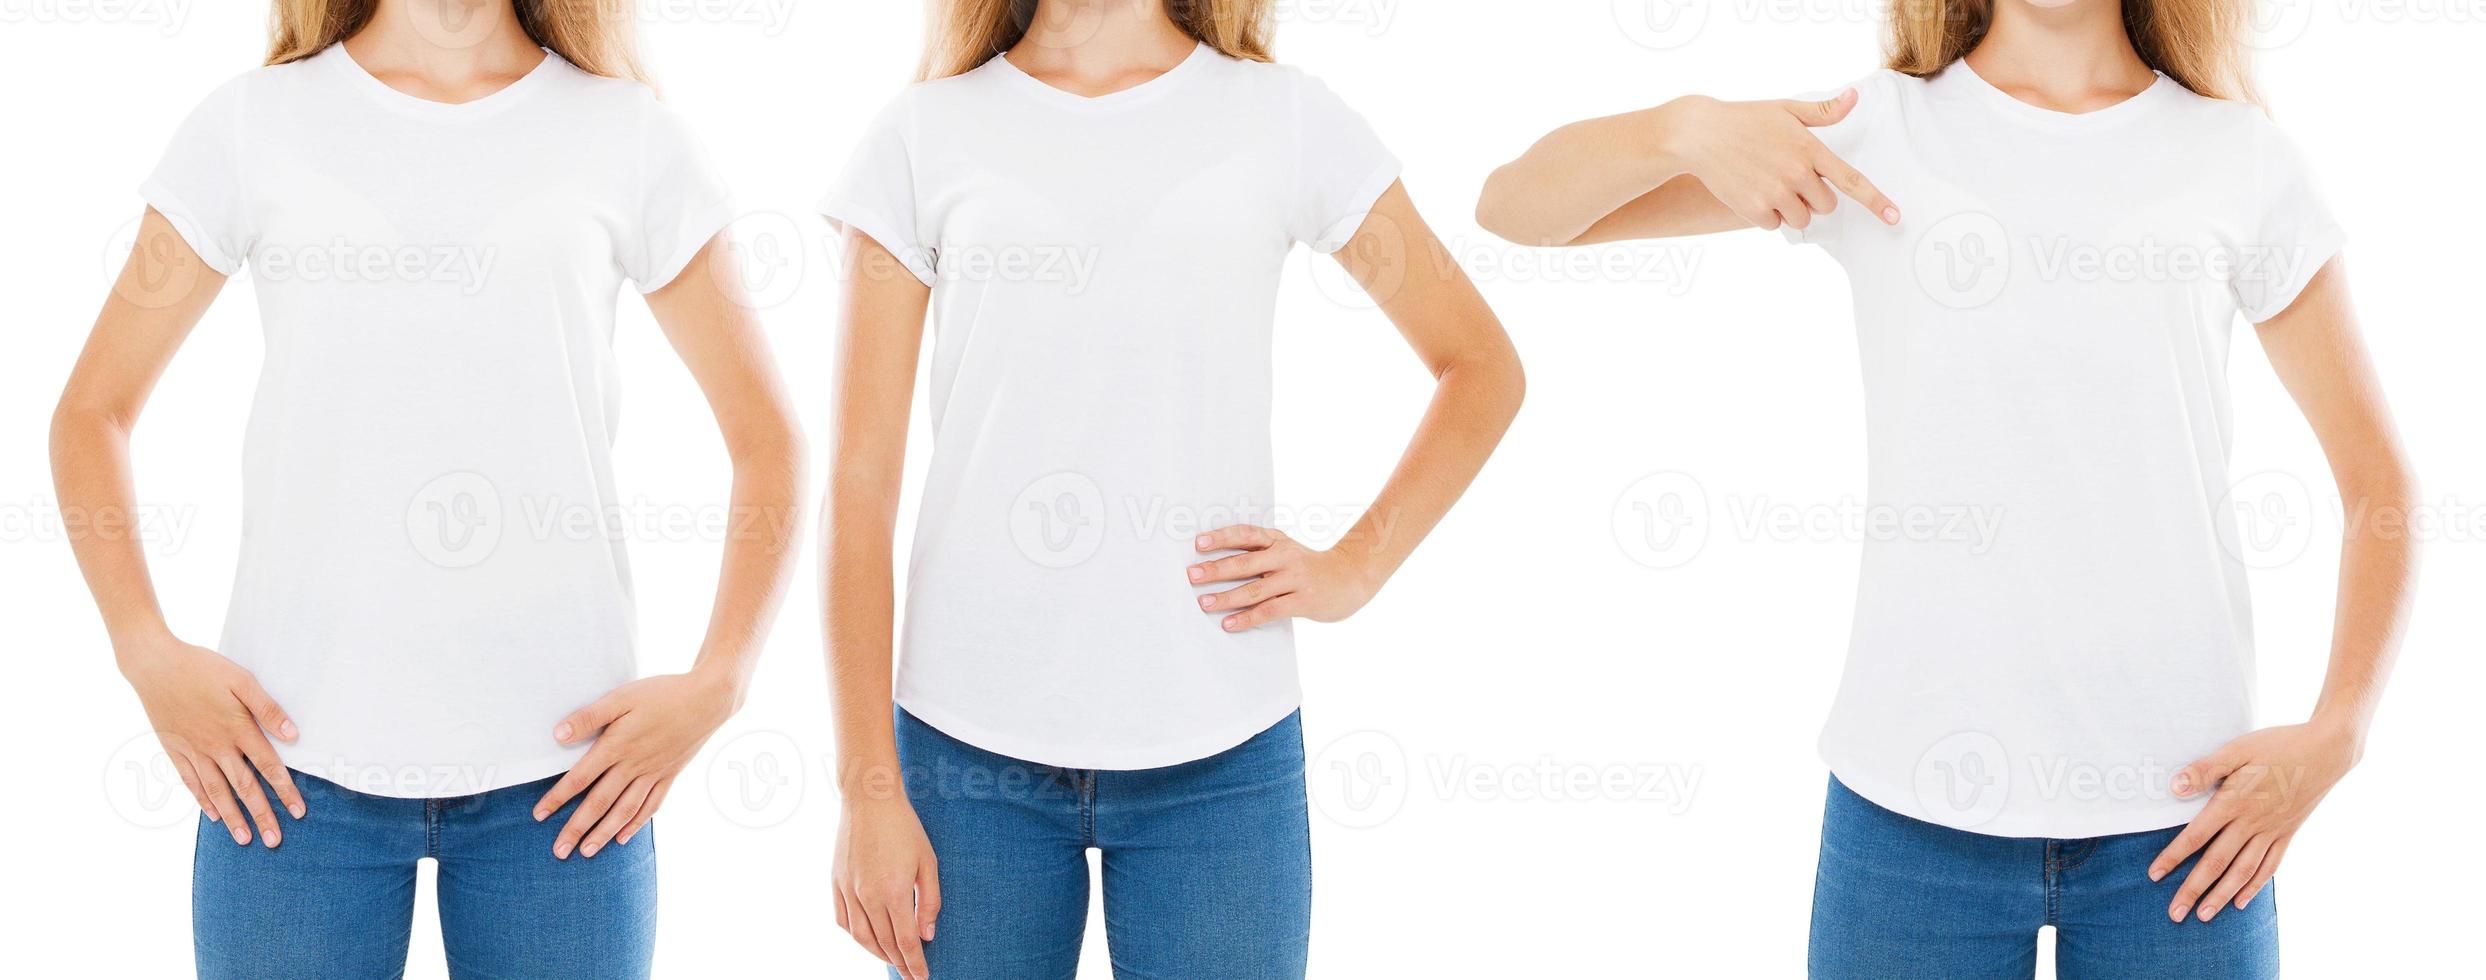 kvinna t shirt set, framsidan baksidan vyer t-shirt isolerad på vitt, tshirt collage foto